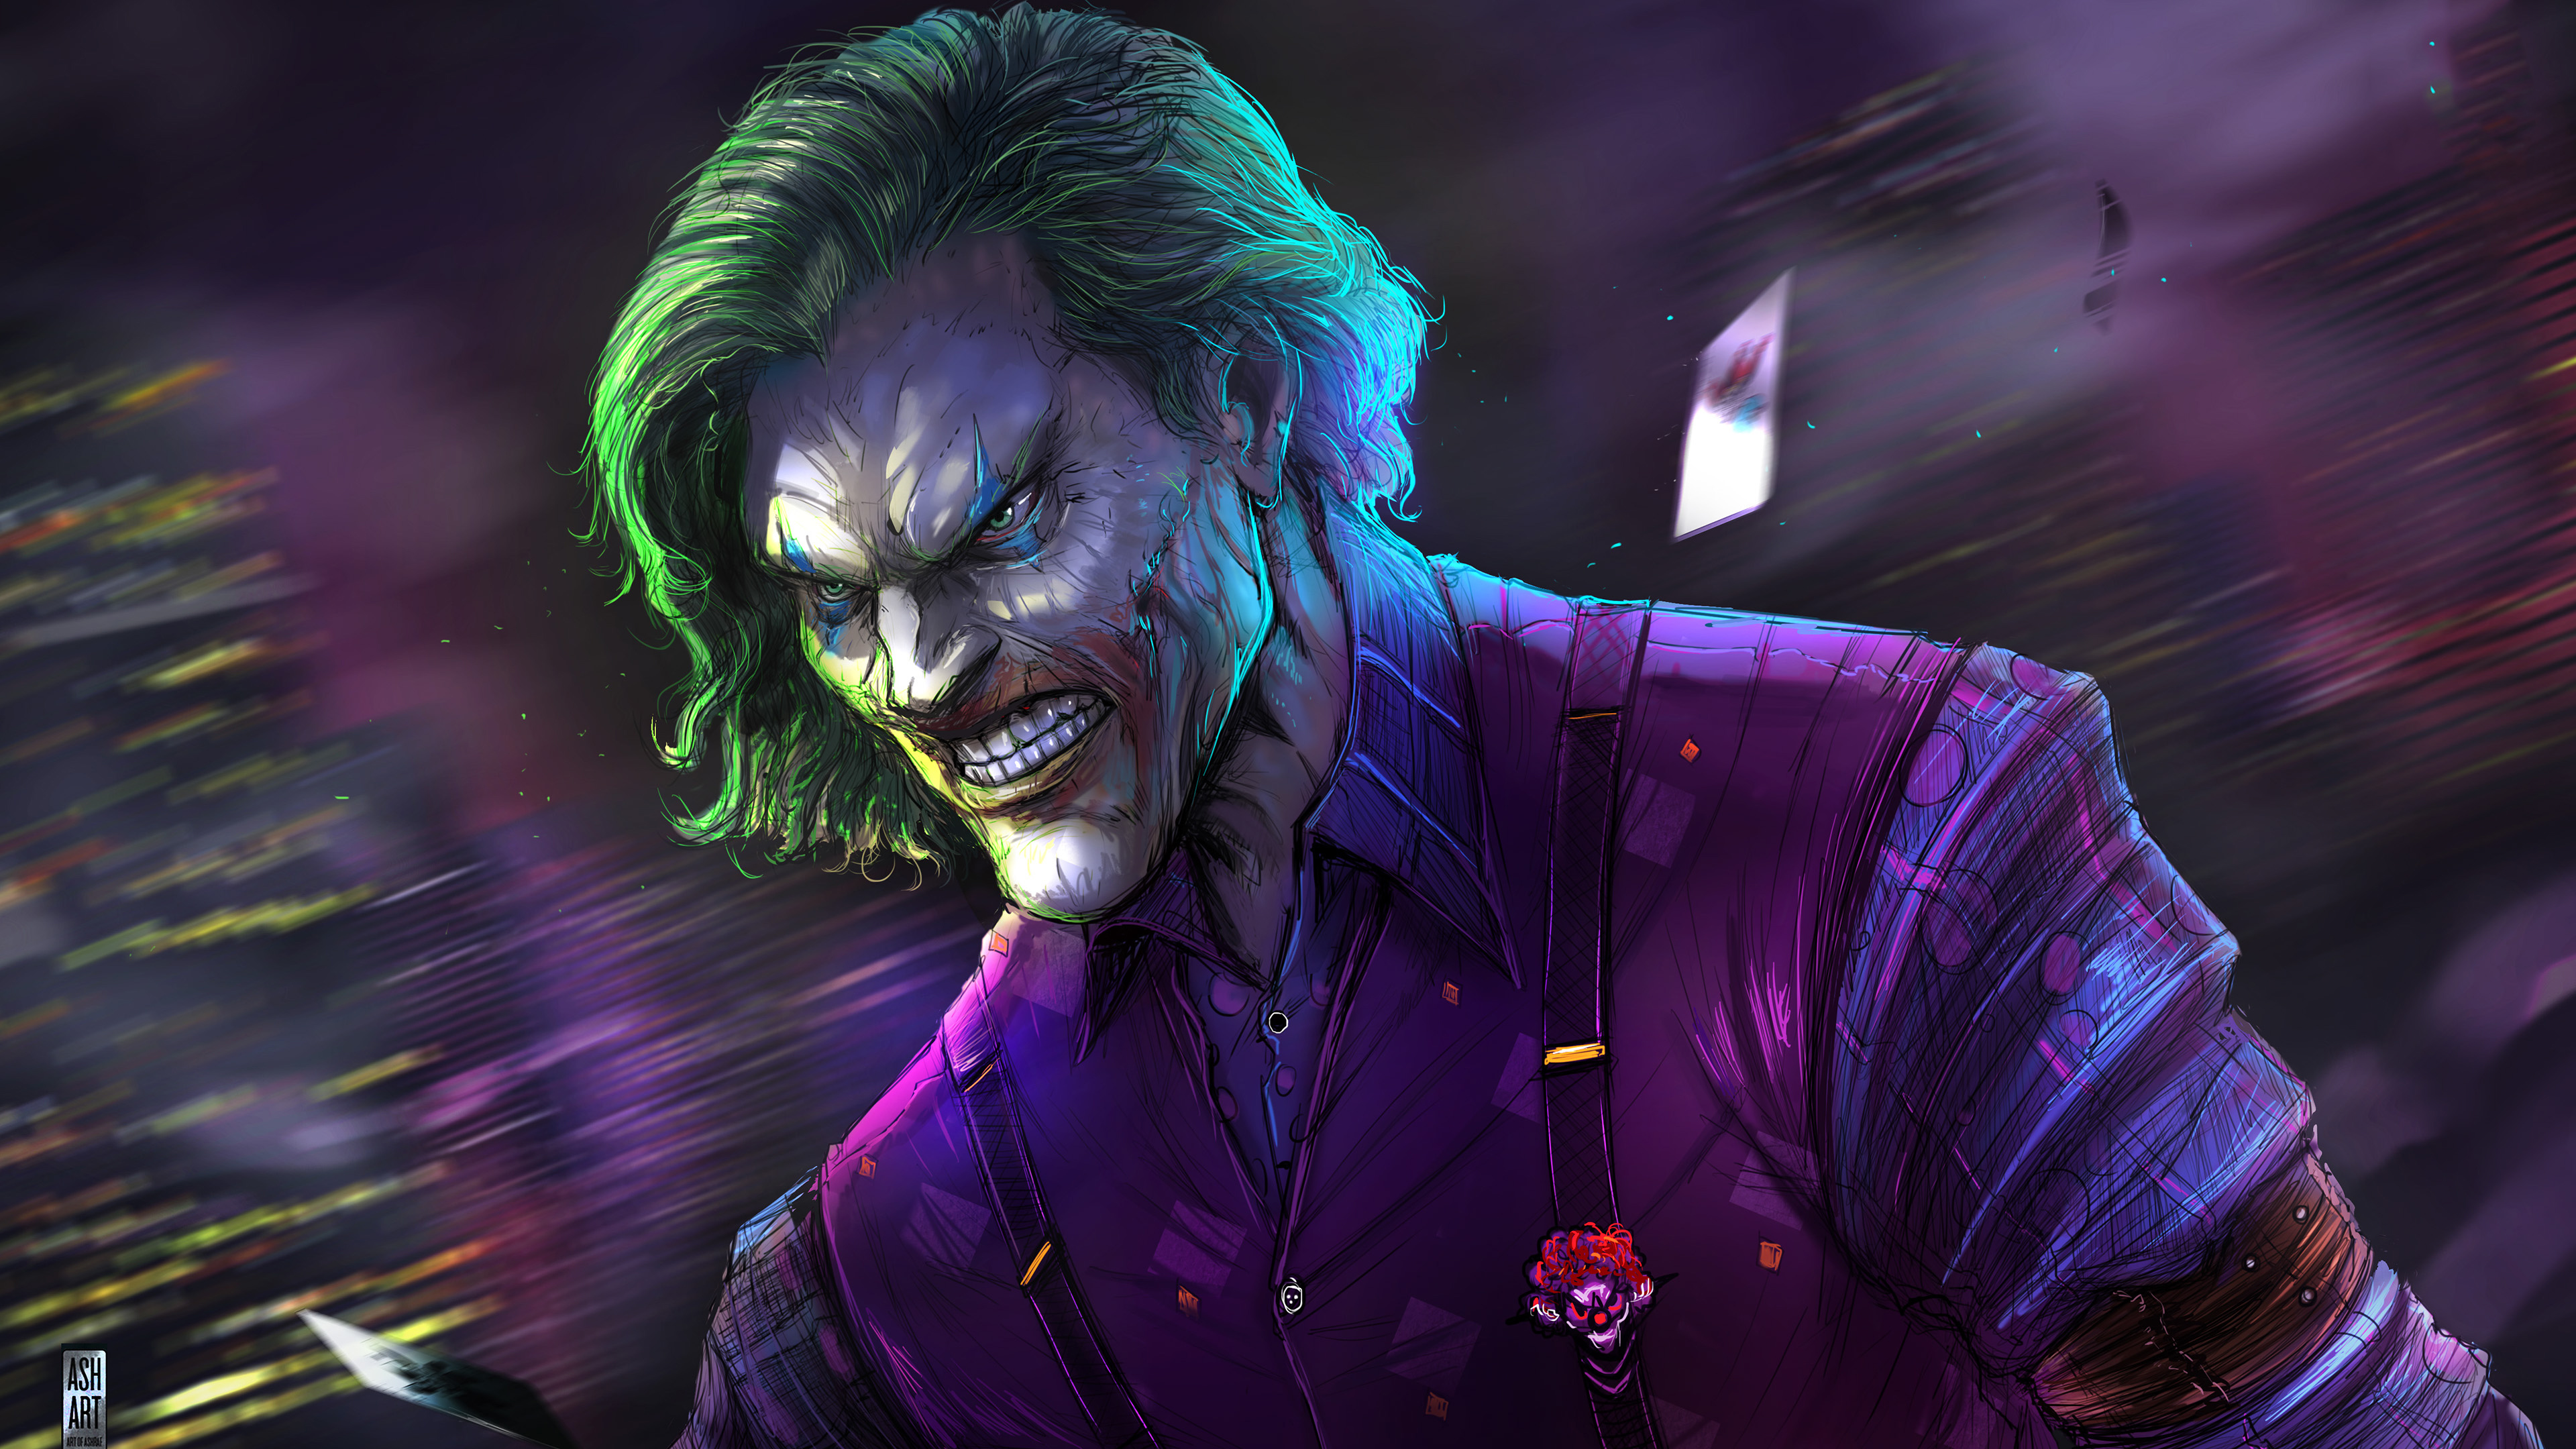  Joker  Artwork 4k  2021 HD Superheroes 4k  Wallpapers  